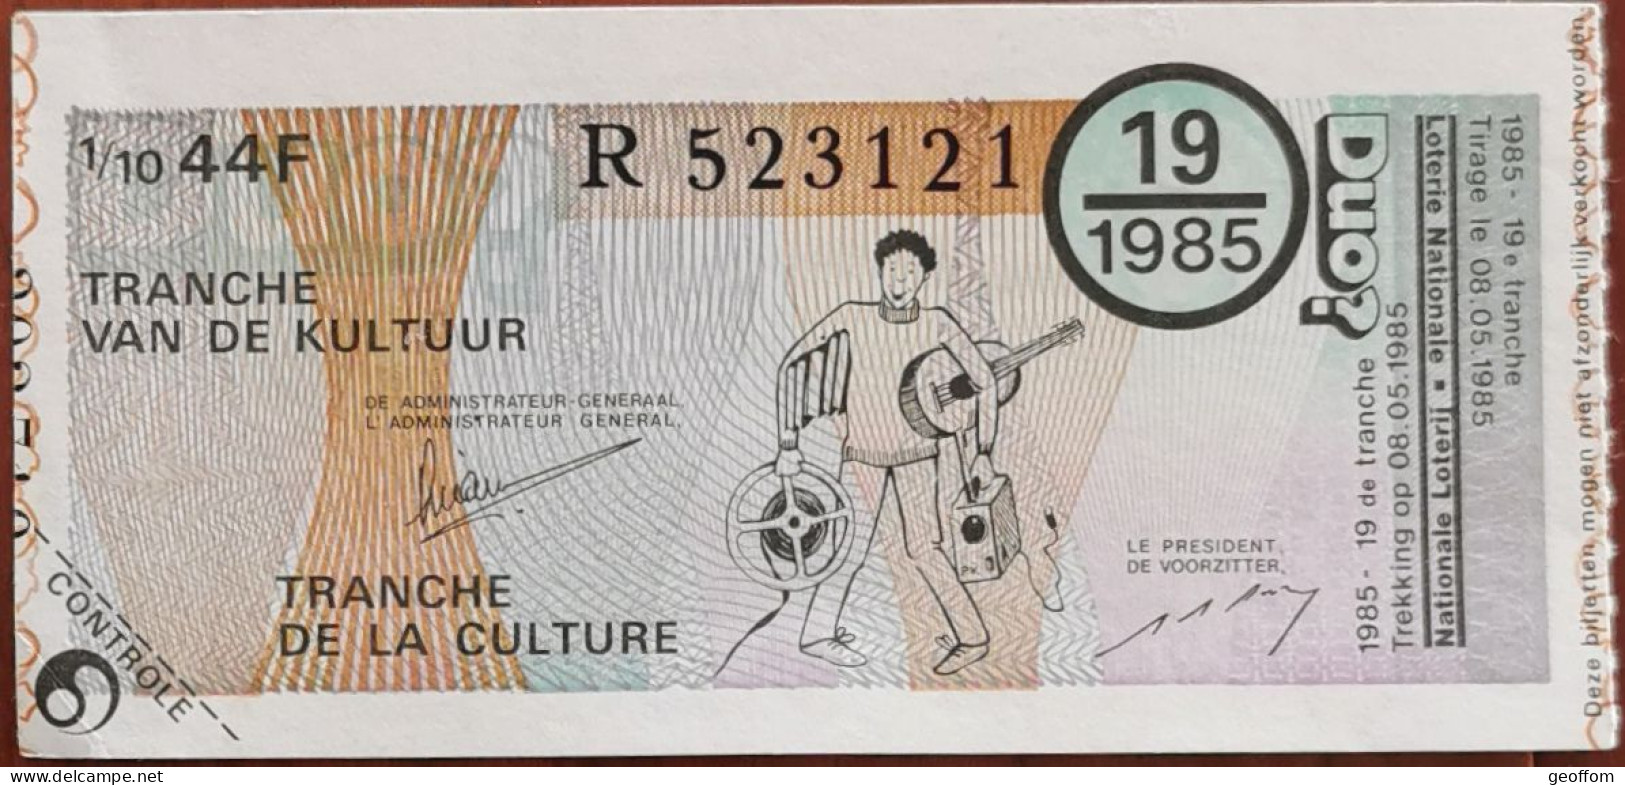 Billet De Loterie Nationale Belgique 1985 19e Tranche De La Culture - 8-5-1985 - Billetes De Lotería